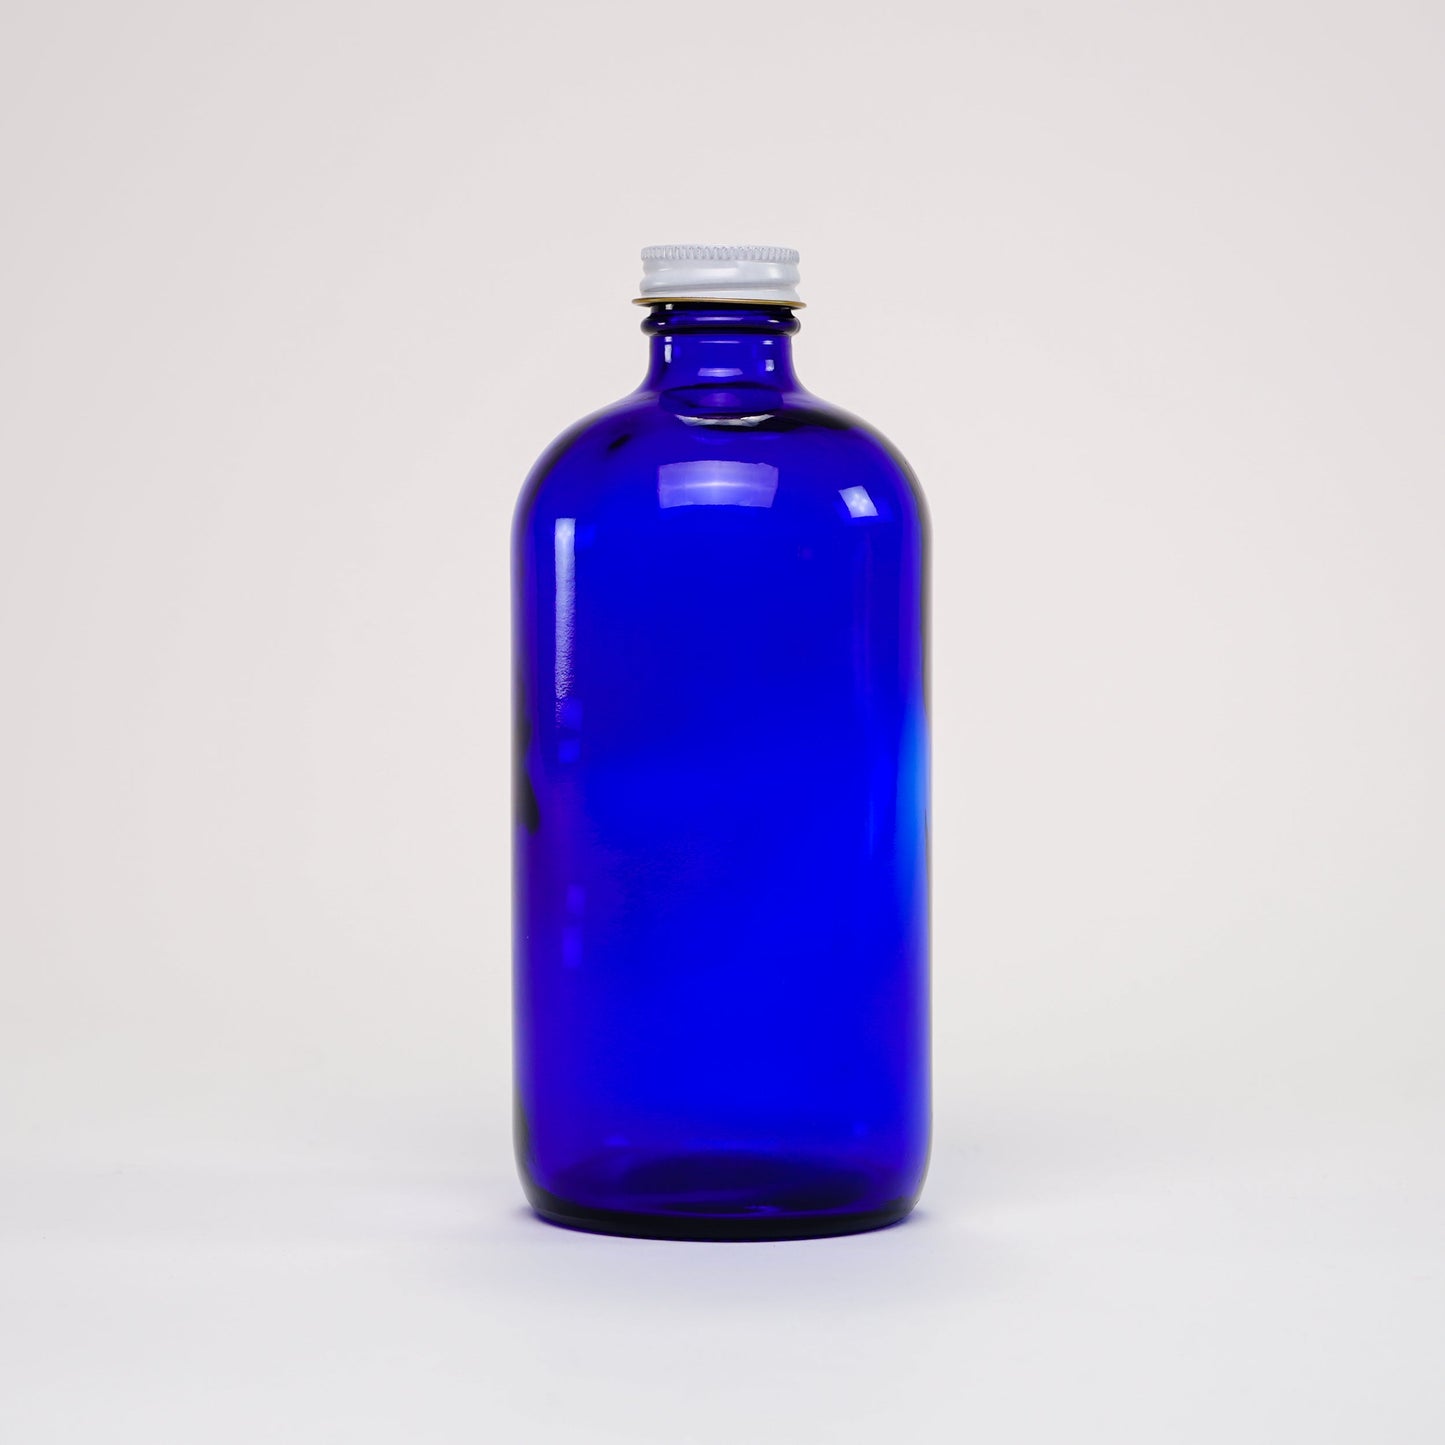 16 oz Cobalt Blue Glass Keeper Bottles